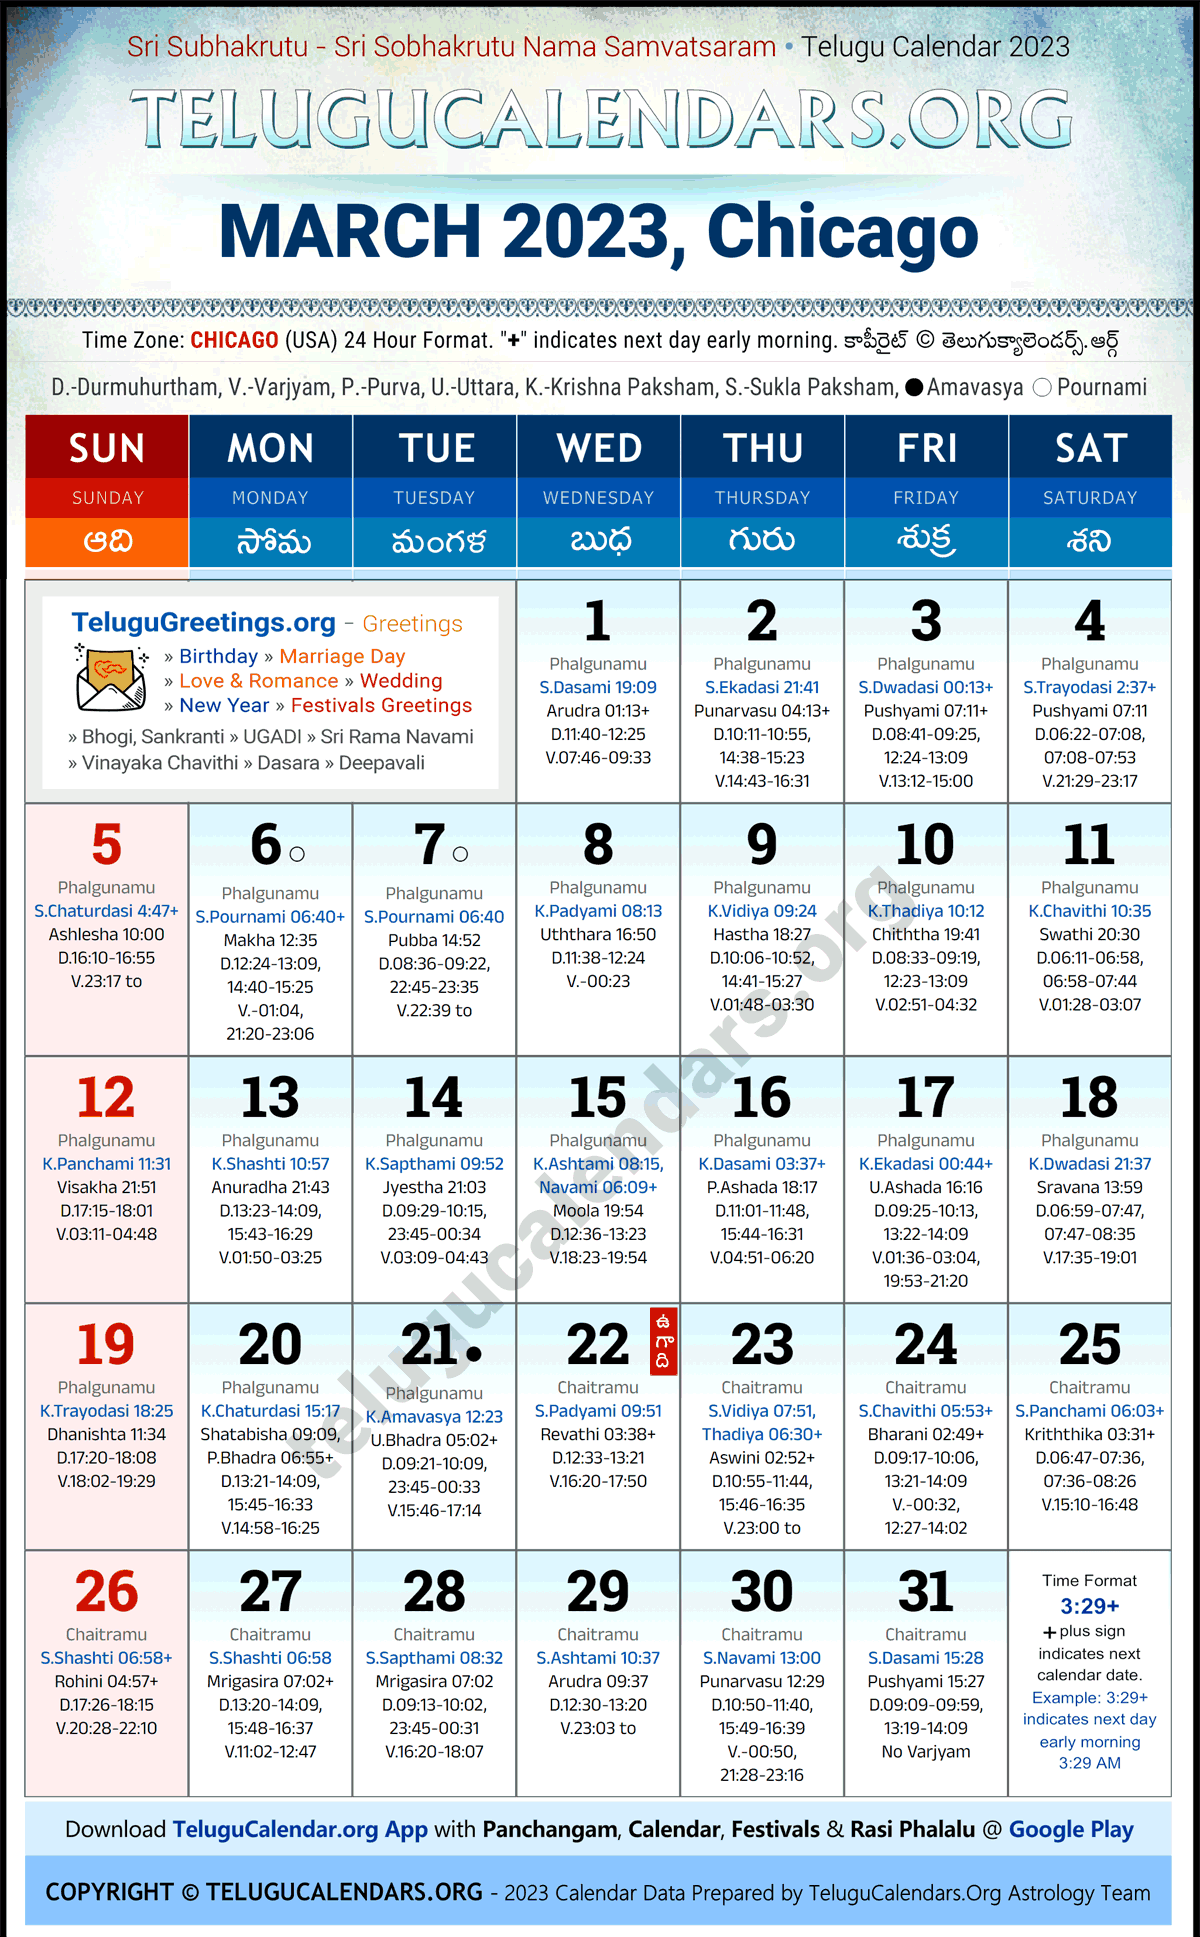 Telugu Calendar 2023 March Festivals for Chicago